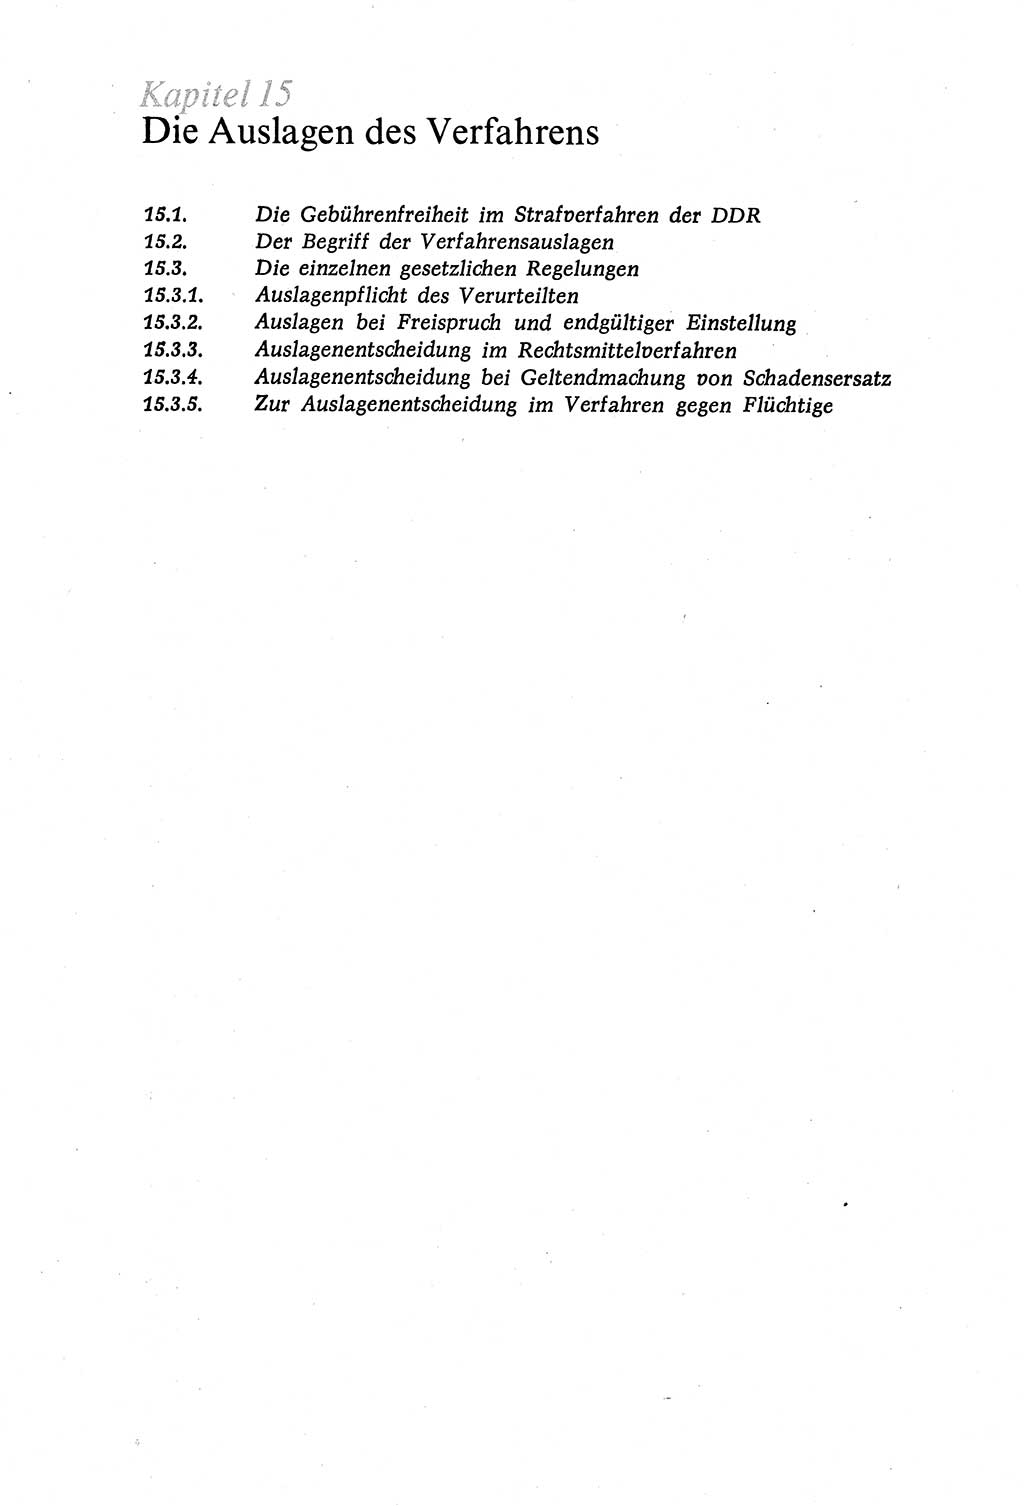 Strafverfahrensrecht [Deutsche Demokratische Republik (DDR)], Lehrbuch 1977, Seite 538 (Strafverf.-R. DDR Lb. 1977, S. 538)